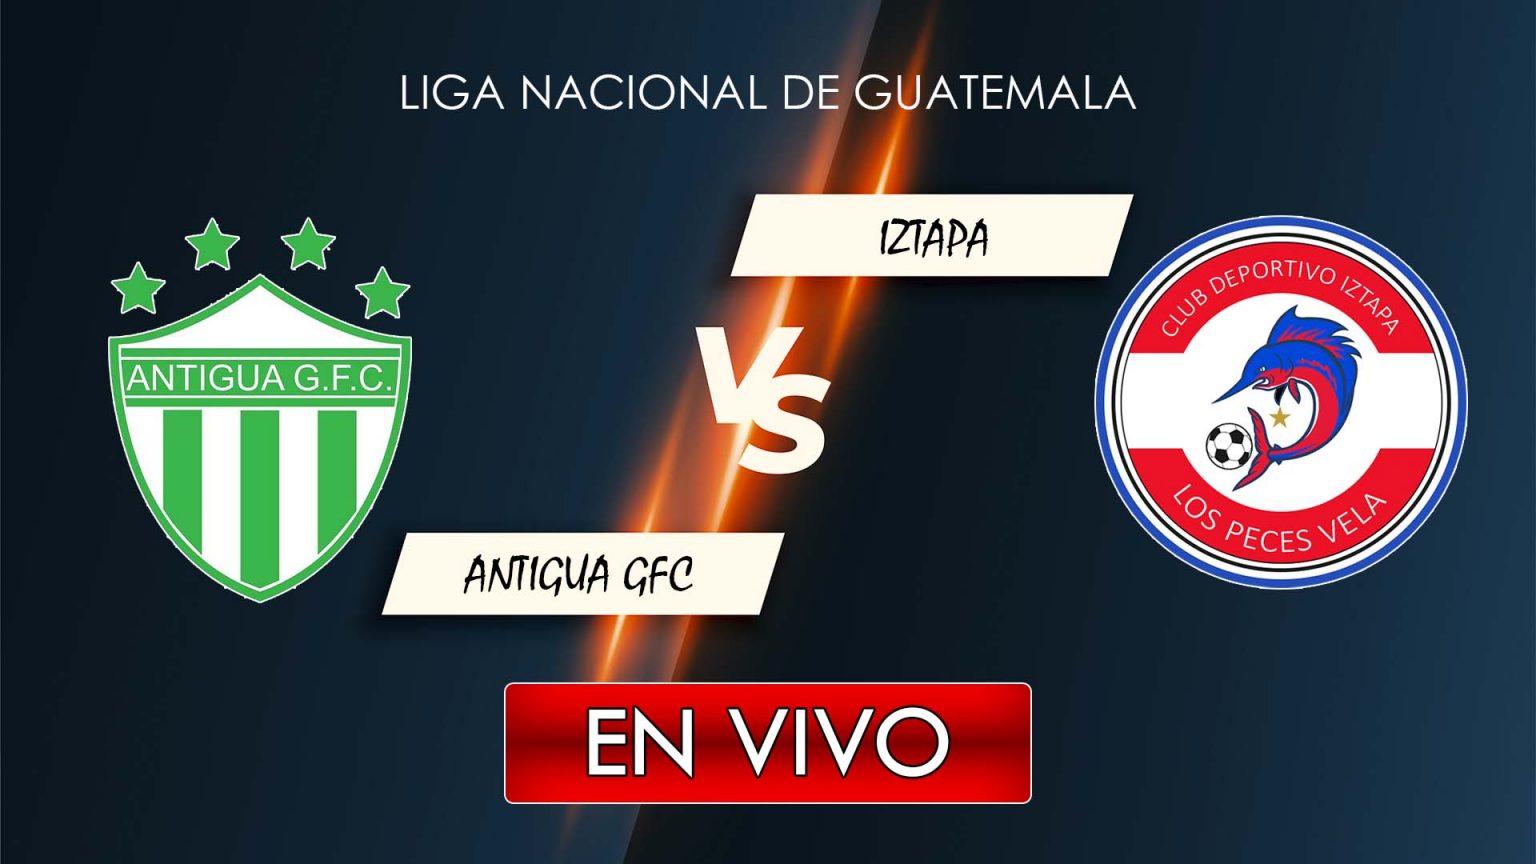 Antigua GFC vs Iztapa EN VIVO Liga Nacional del Fútbol de Guatemala